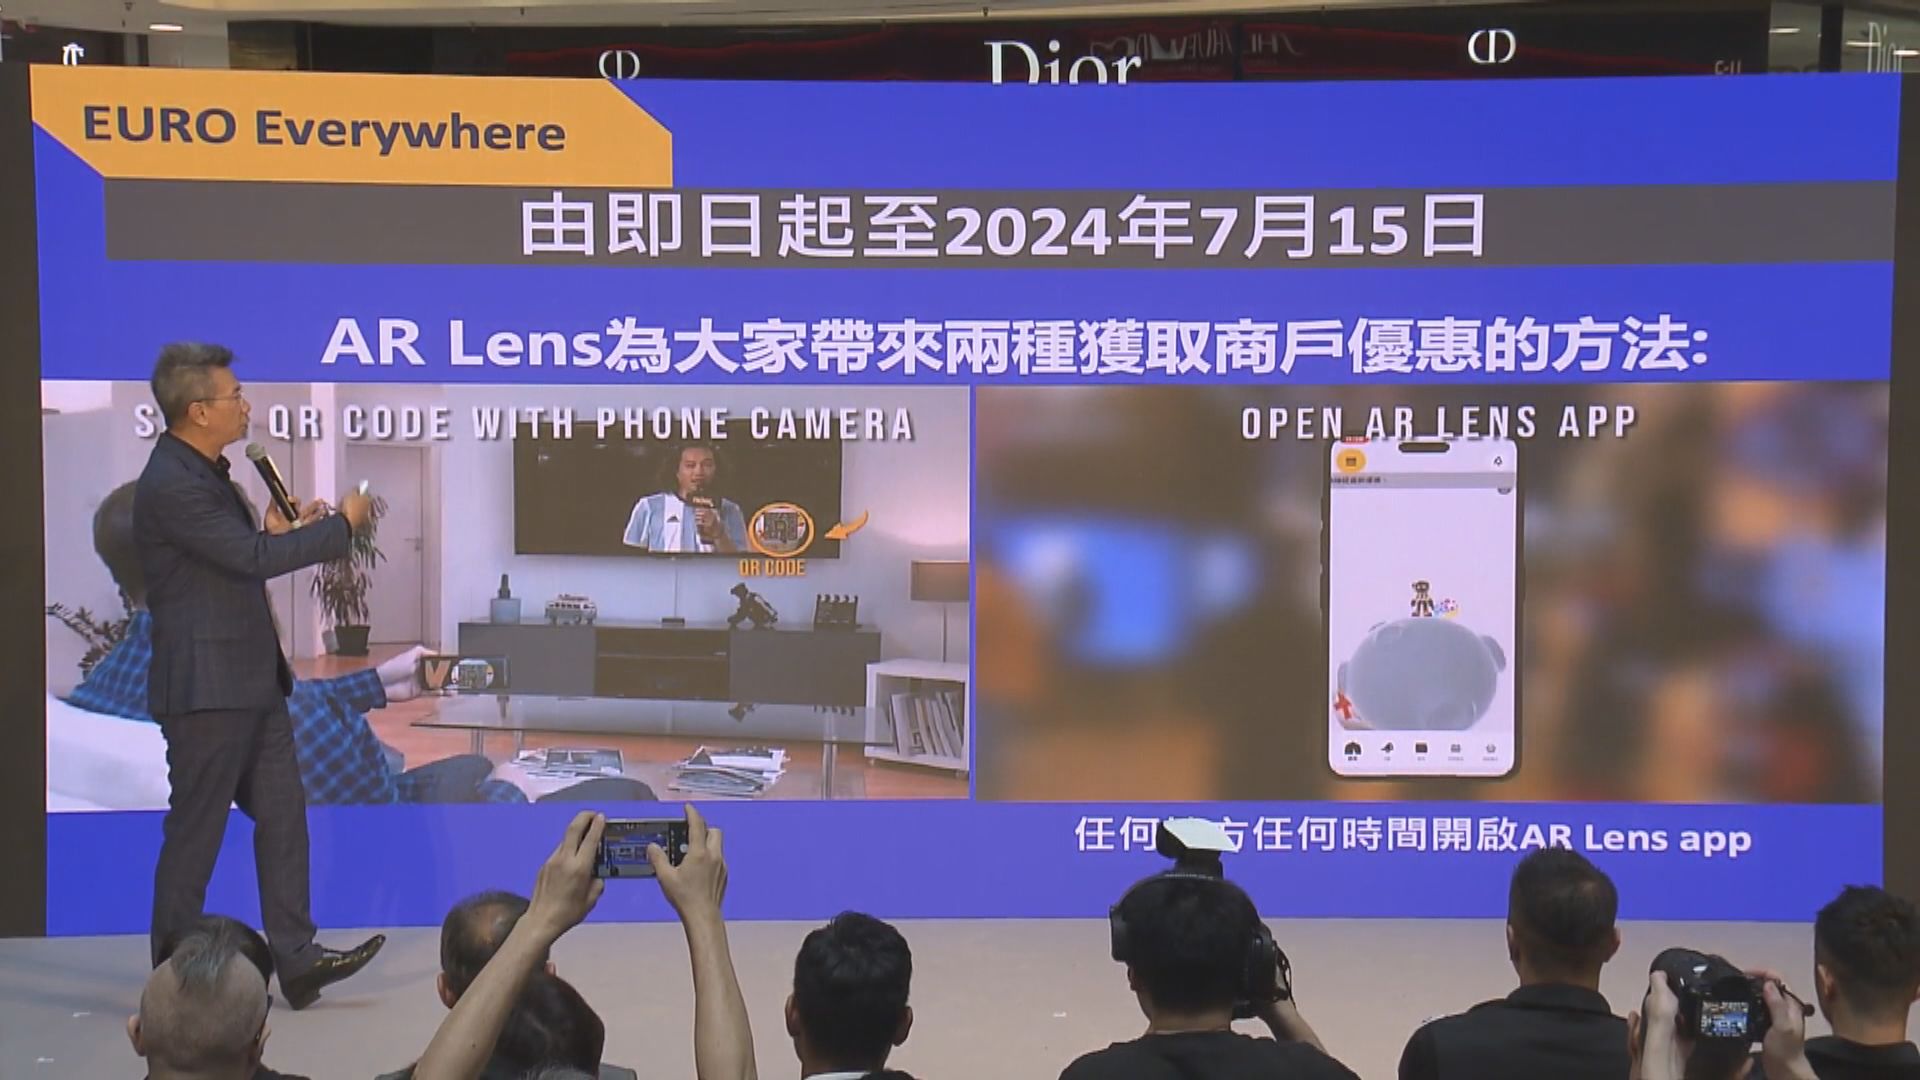 NowTV聯乘AR Lens送出五萬張優惠券